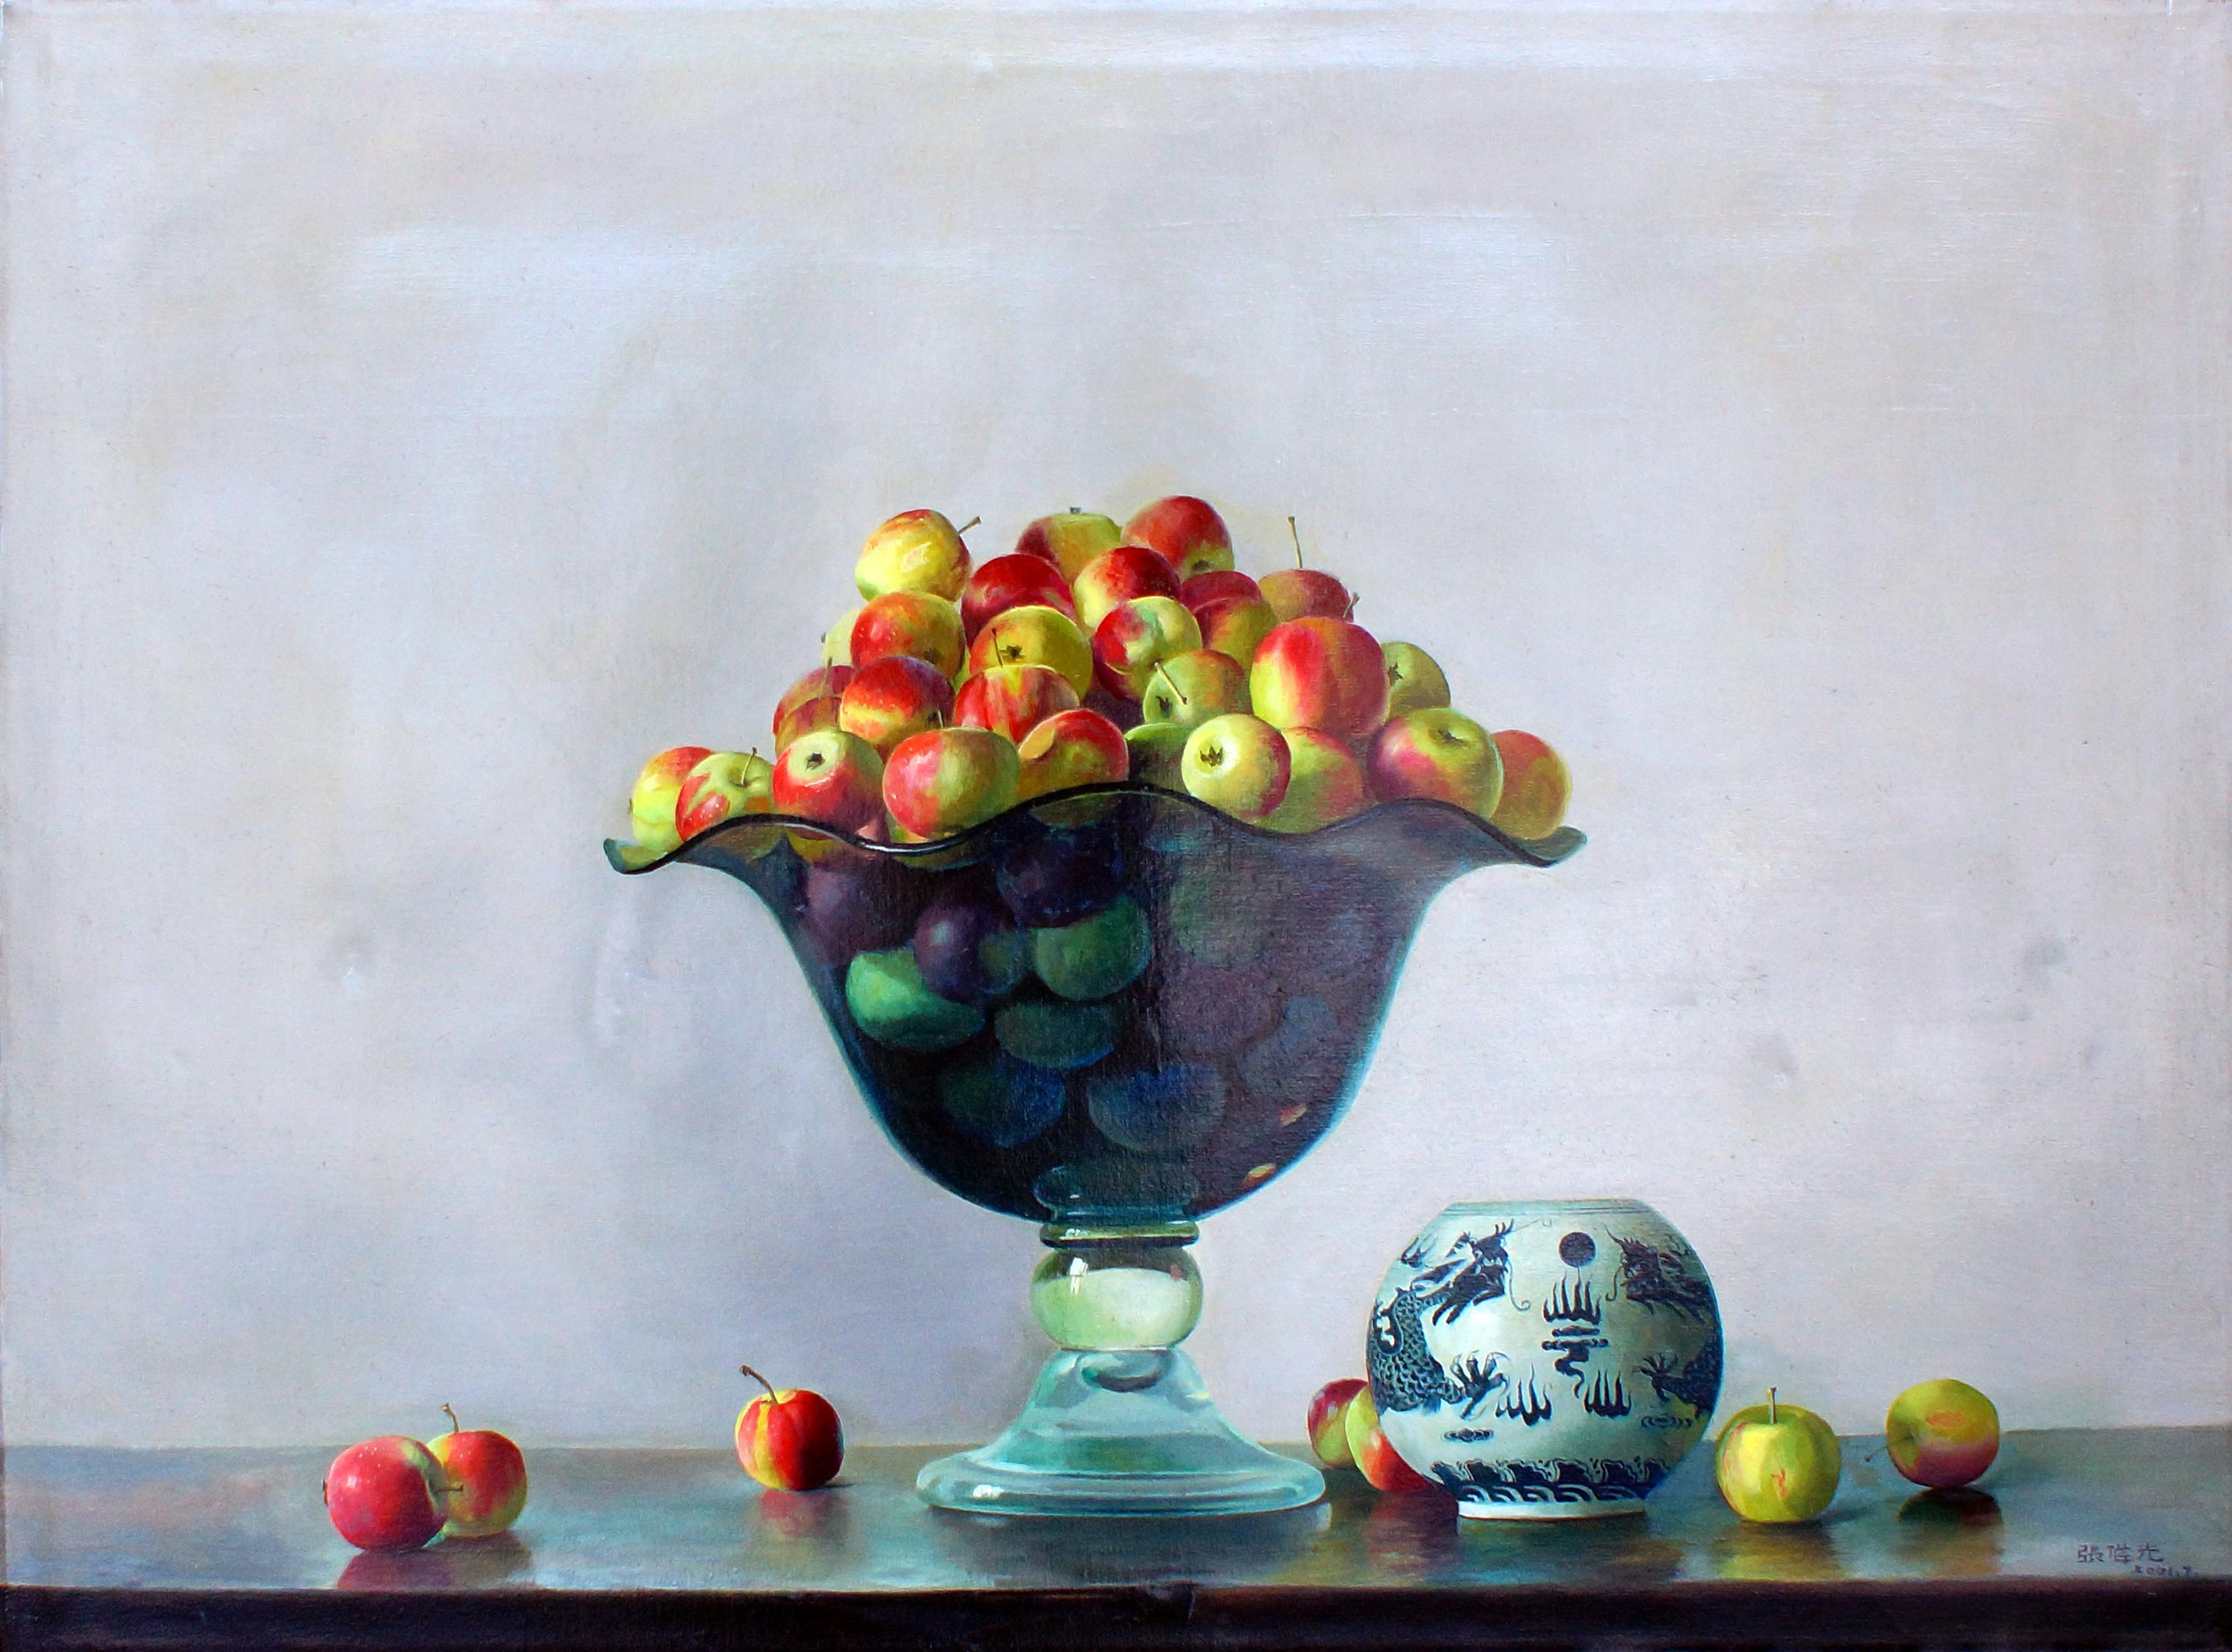 Kristallvase mit Äpfeln – Öl auf Leinwand – 2001